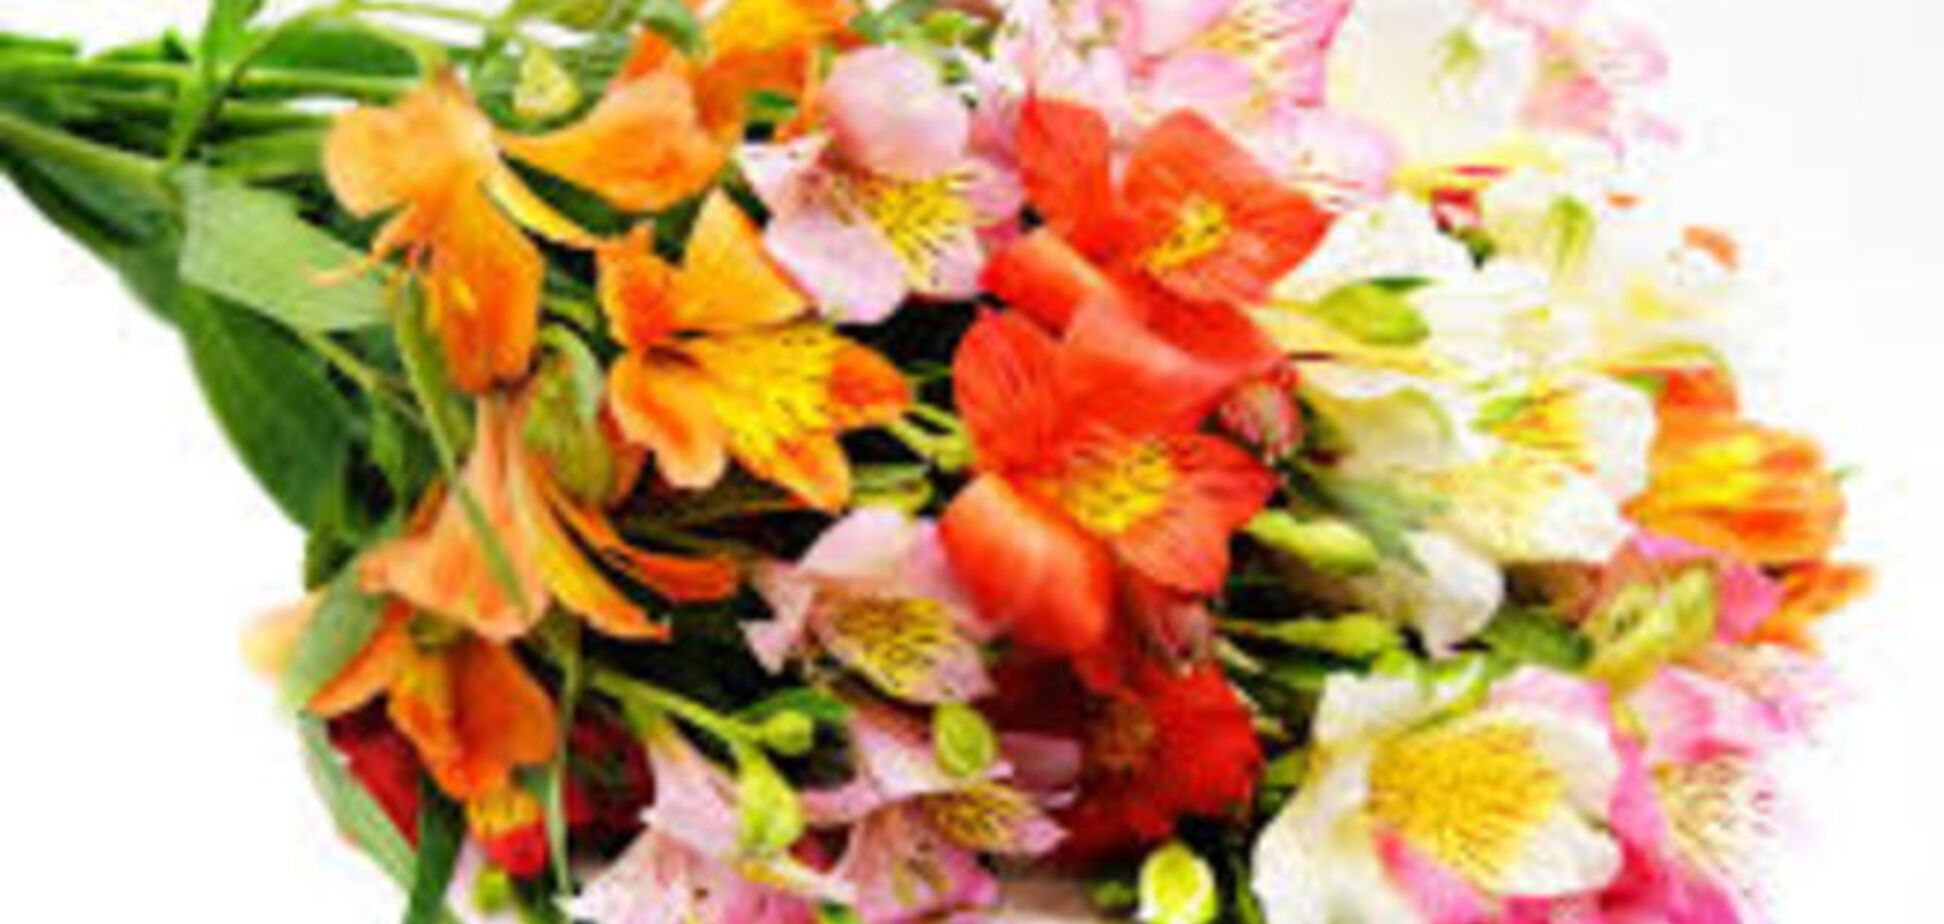 Онлайн магазины цветов: особенности и преимущества